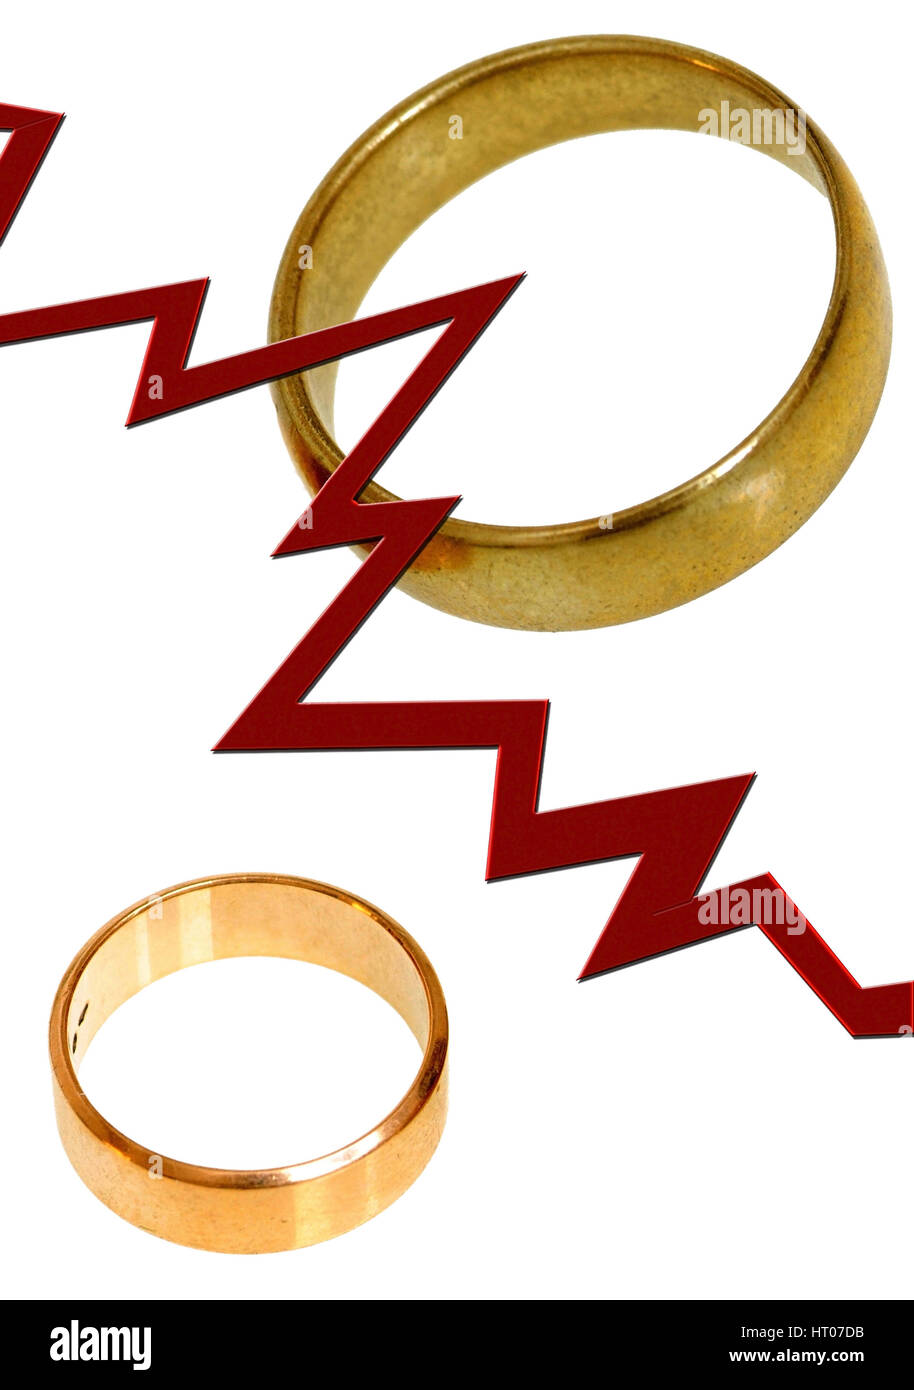 Scheidung Symbolbild - symbolique pour un divorce Banque D'Images